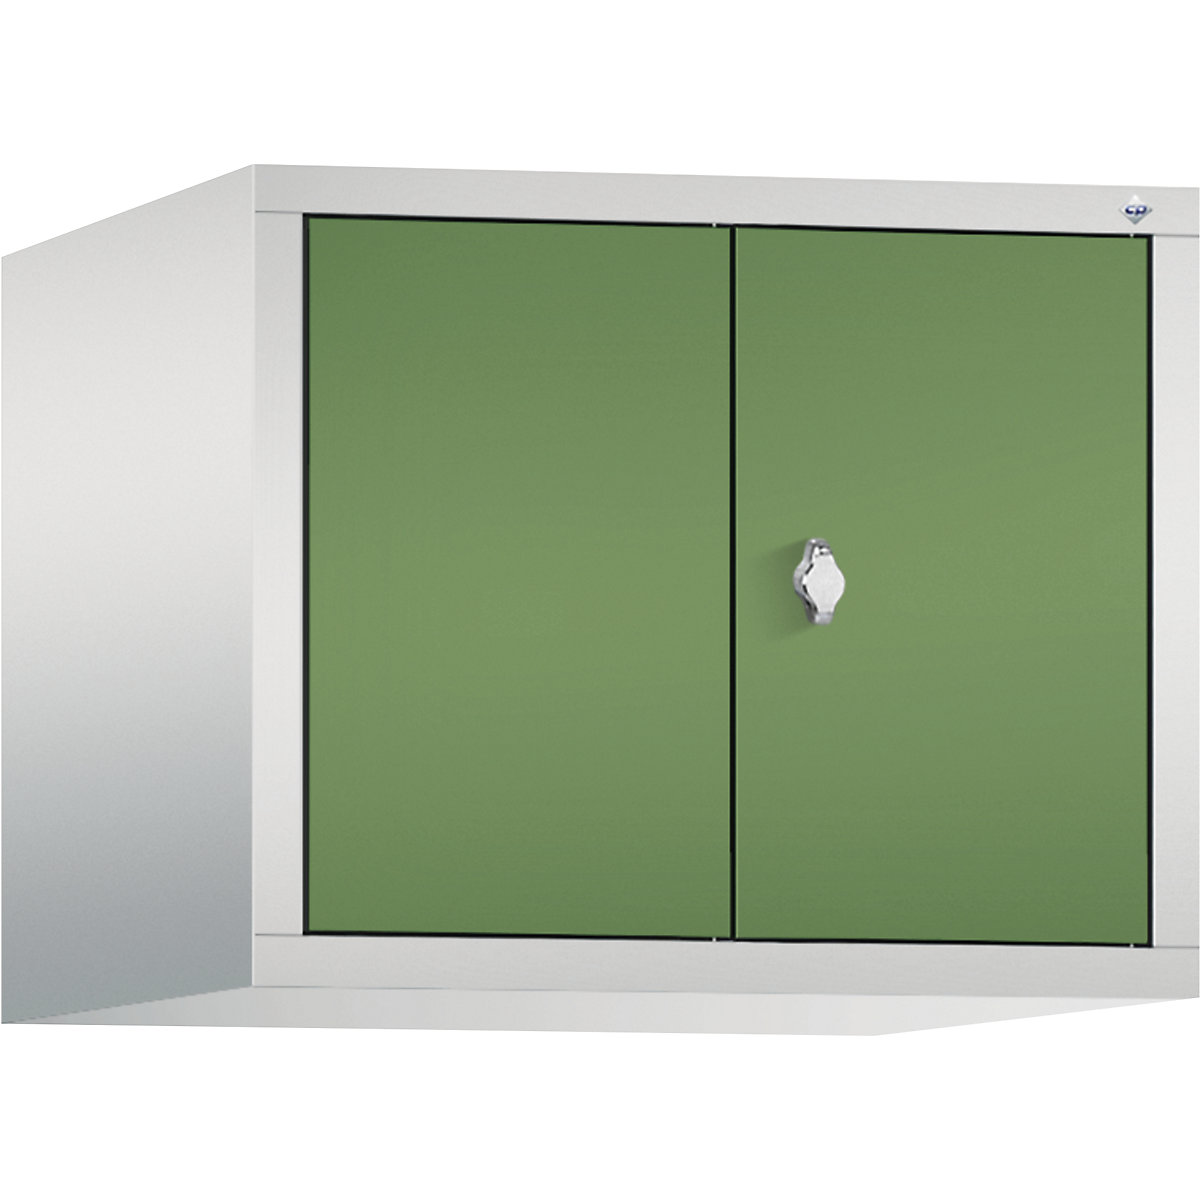 C+P – Dogradni ormar CLASSIC, vrata koja se zatvaraju jedna prema drugima, 2 odjela, širina odjela 300 mm, u svijetlosivoj / rezeda zelenoj boji